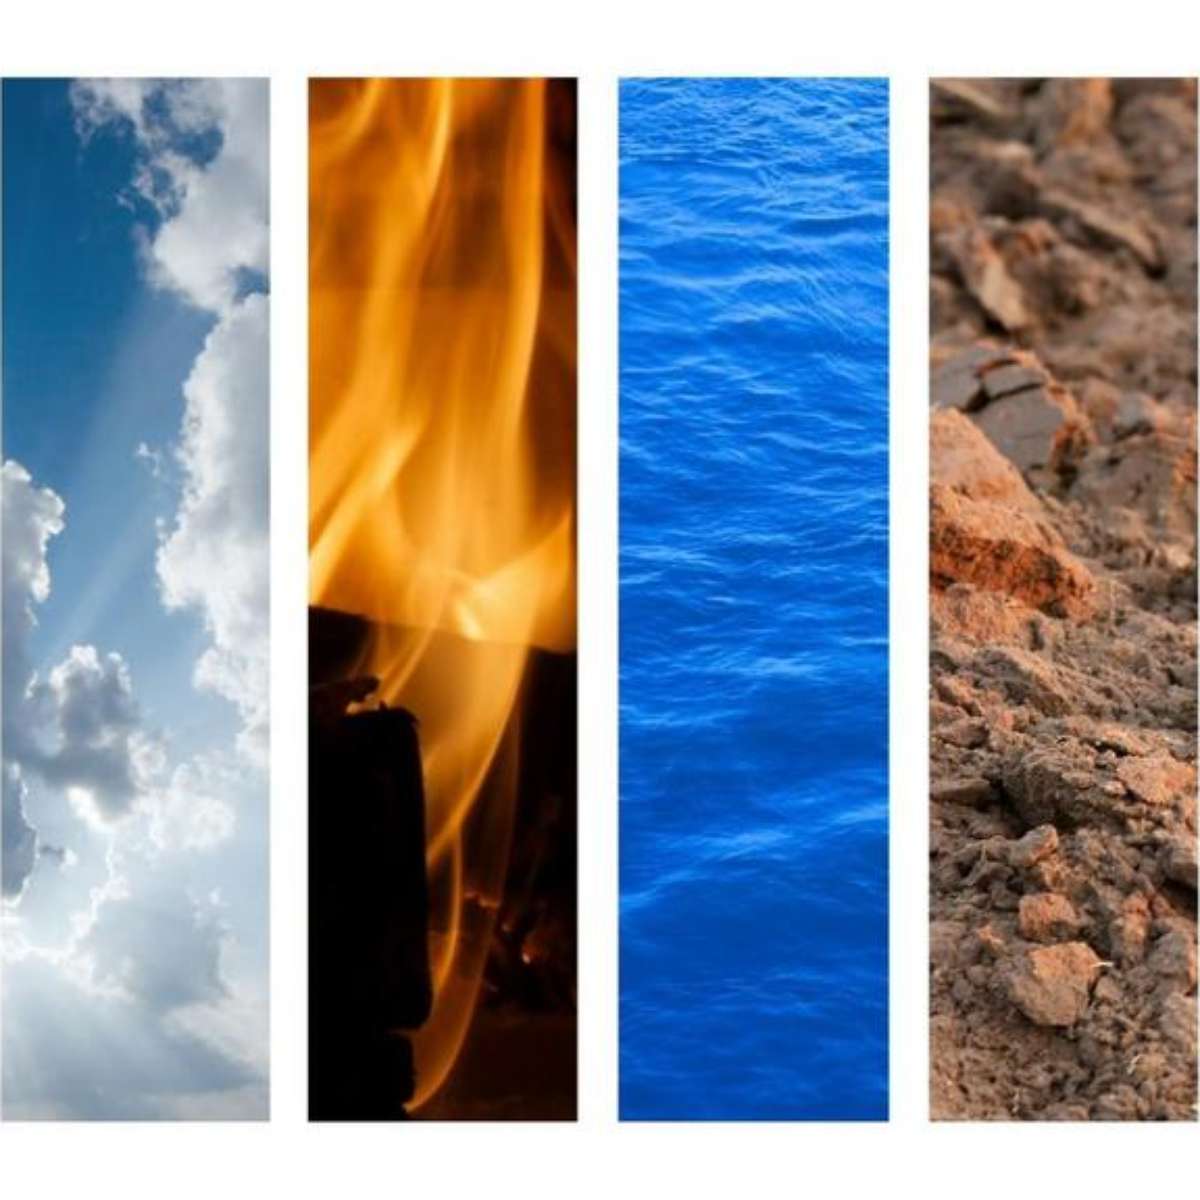 Fogo, Terra, Ar e Água: os quatro elementos na astrologia